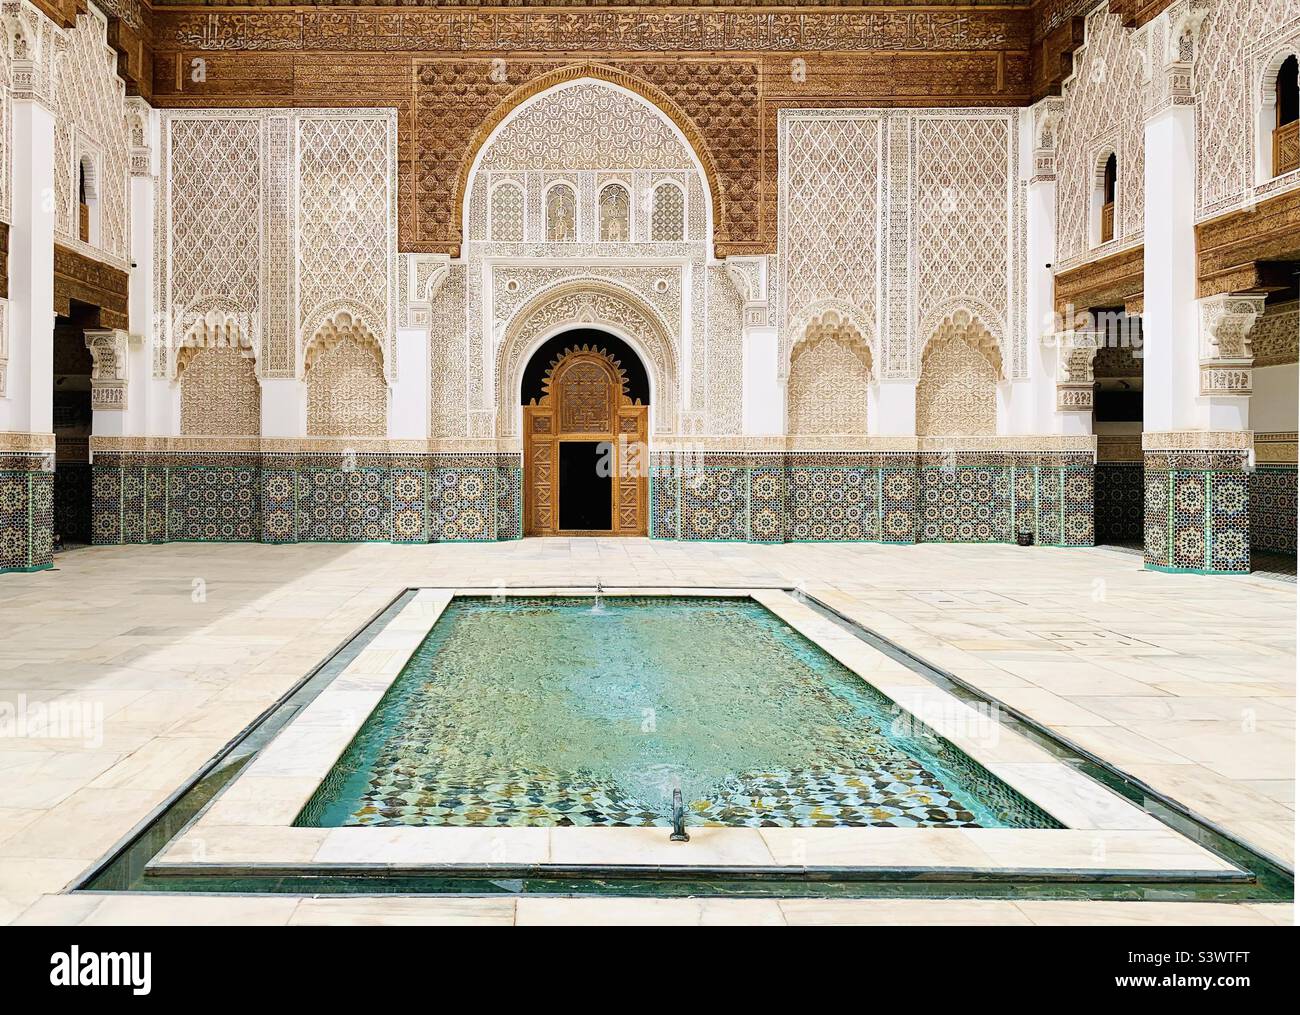 Il cortile principale e la piscina riflettente nella Madrasa ben Youssef, un tempo la più grande scuola islamica del Marocco, Marrakech, Marocco, Nord Africa. Foto Stock